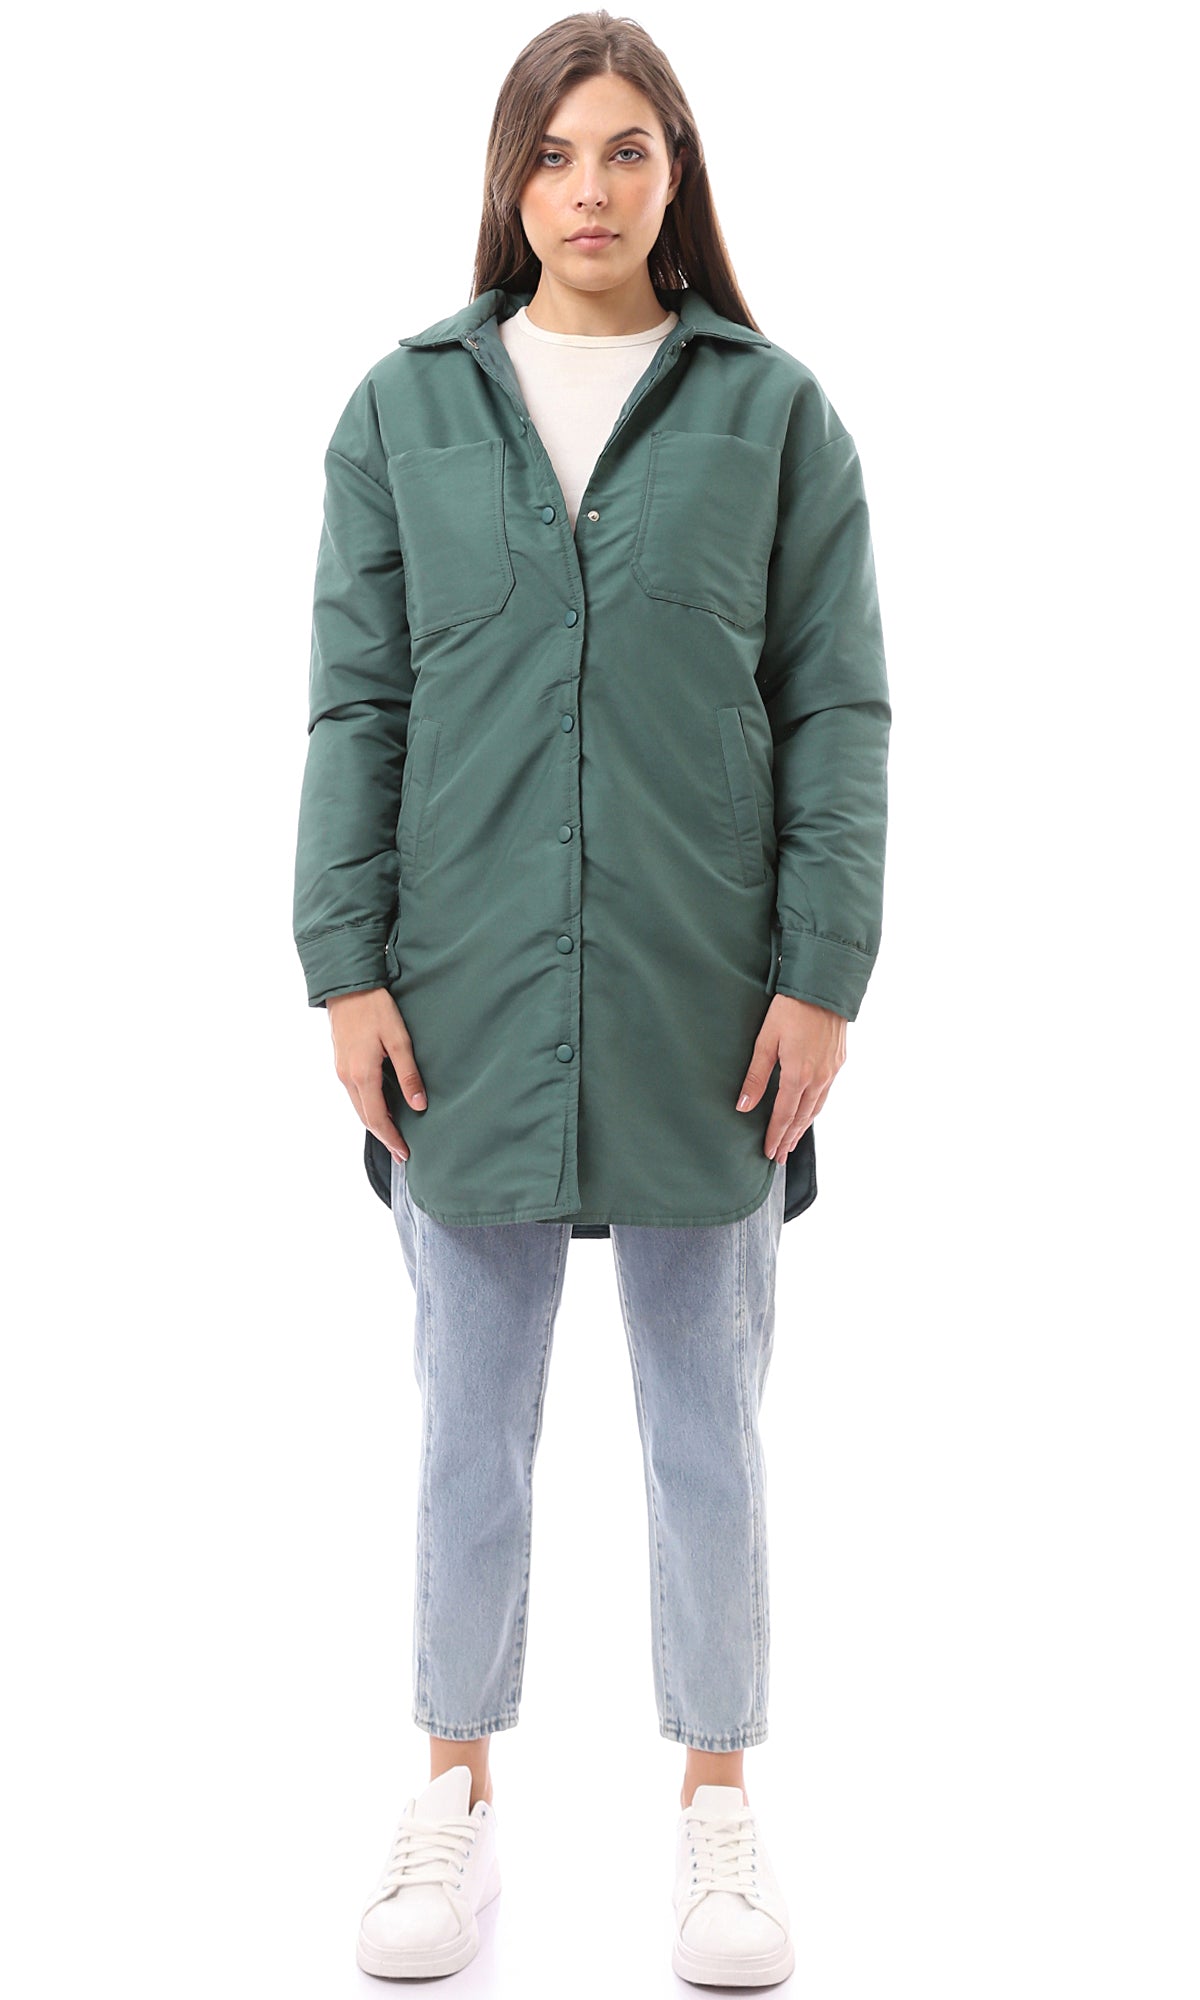 O171921 Turn Down Collar Dark Jade Green Solid Long Jacket